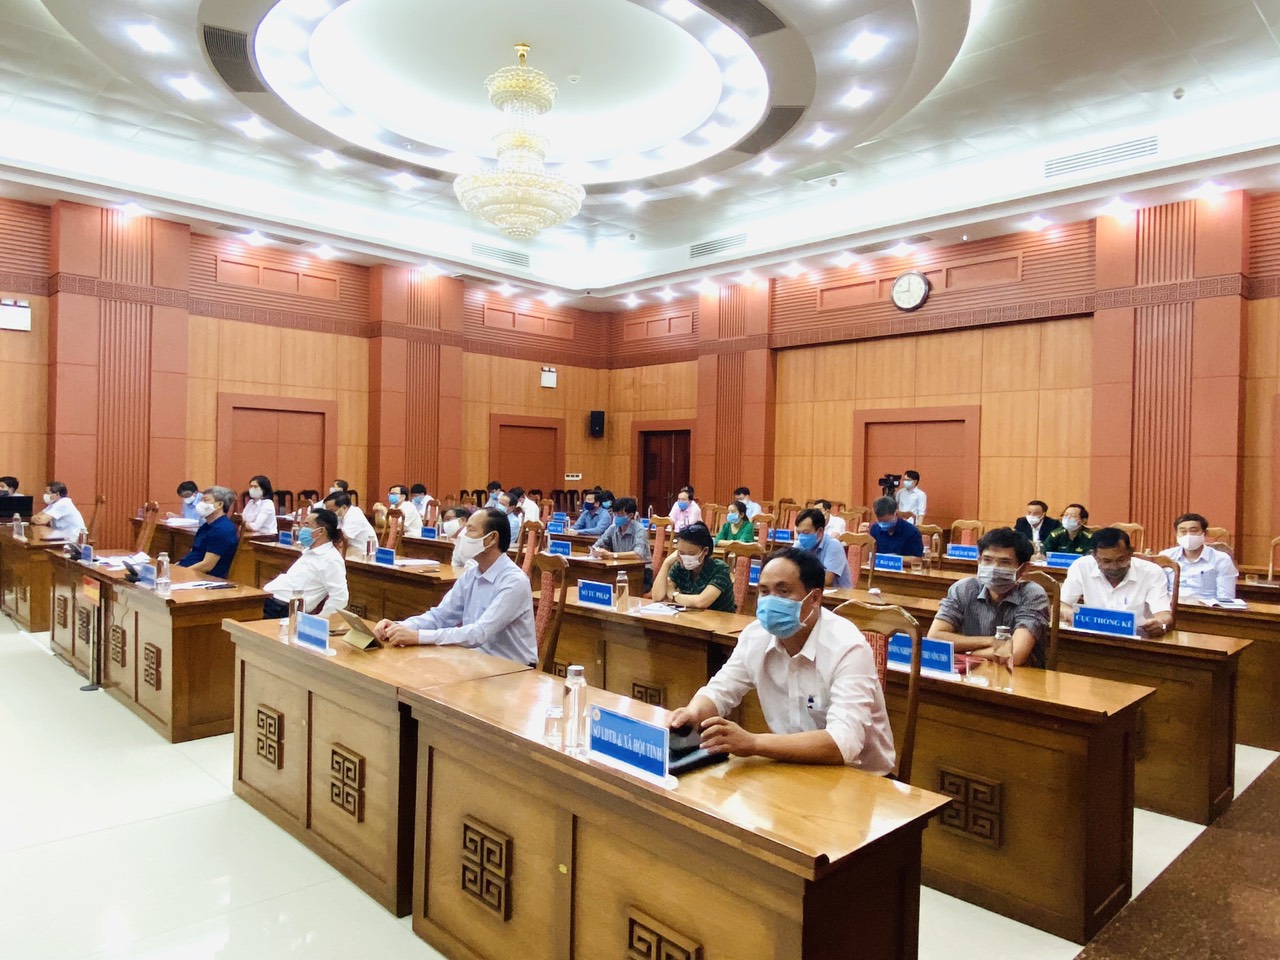 Lãnh đạo HHDN tỉnh Quảng Nam dự Lễ Khai trương Hệ thống Thông tin báo cáo quốc gia và công bố dịch vụ công trực tuyến thứ 1.000 trên Cổng Dịch vụ công quốc gia